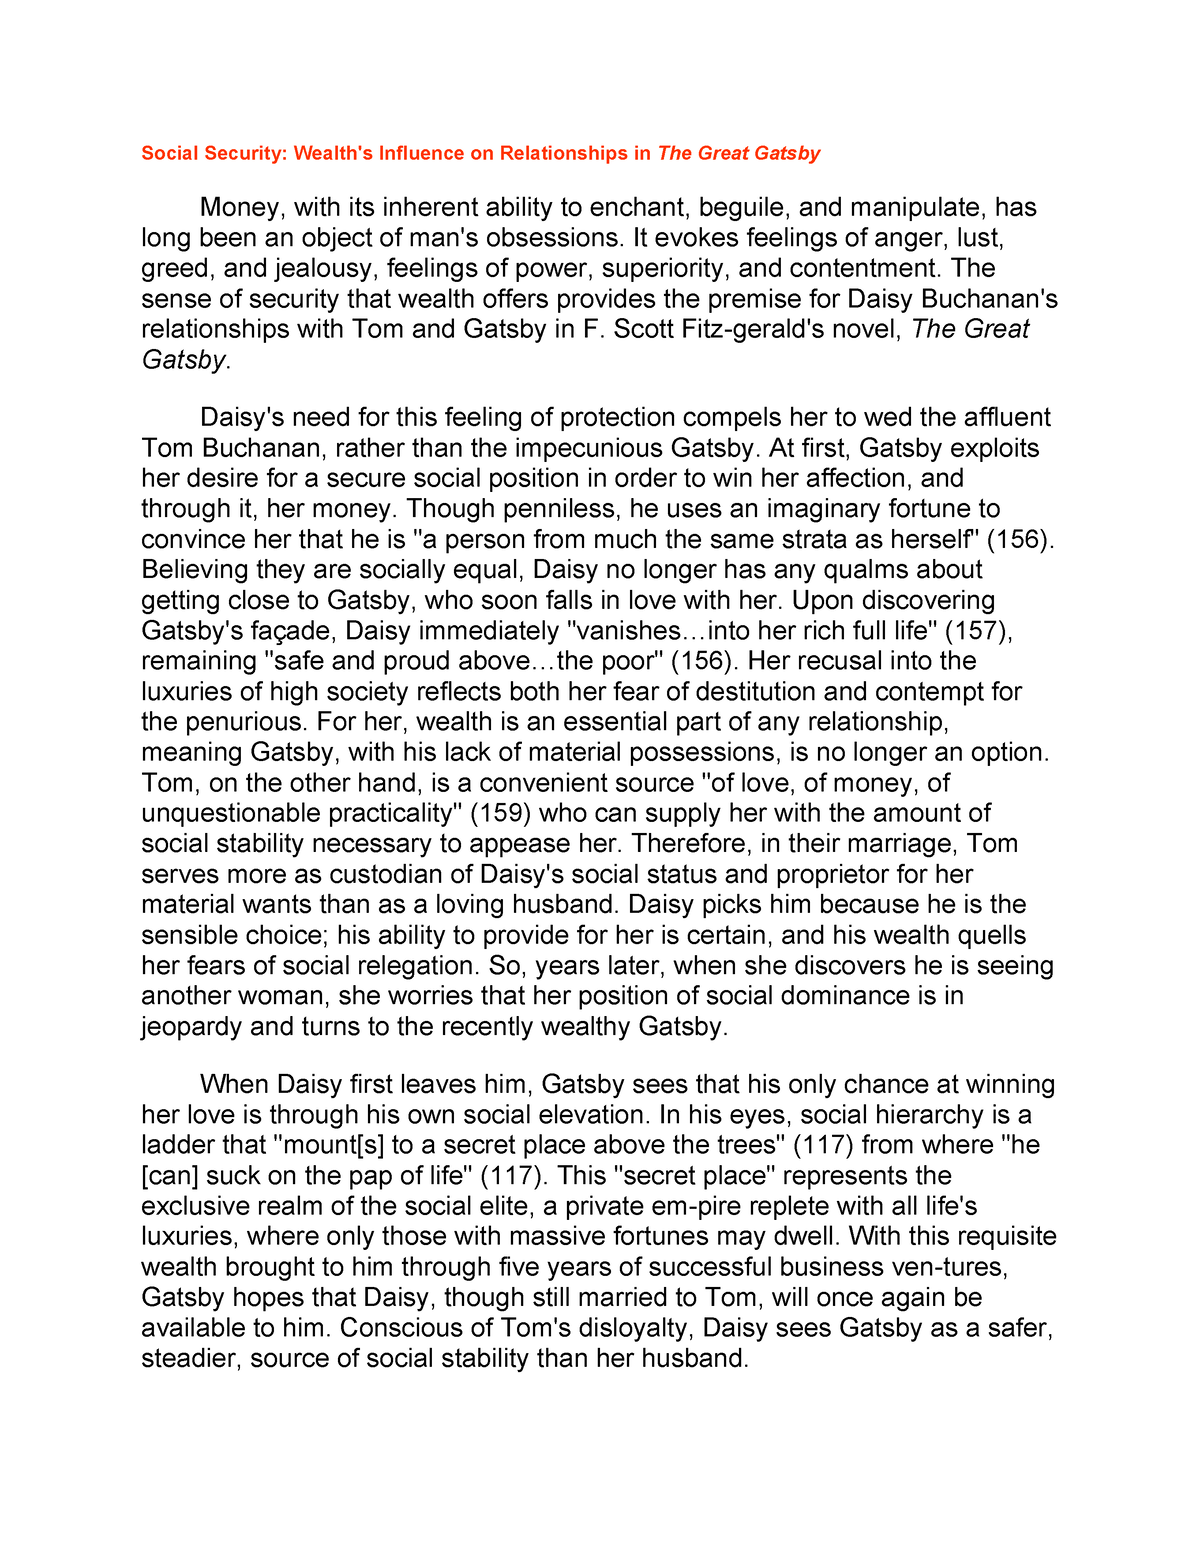 gatsby money essay